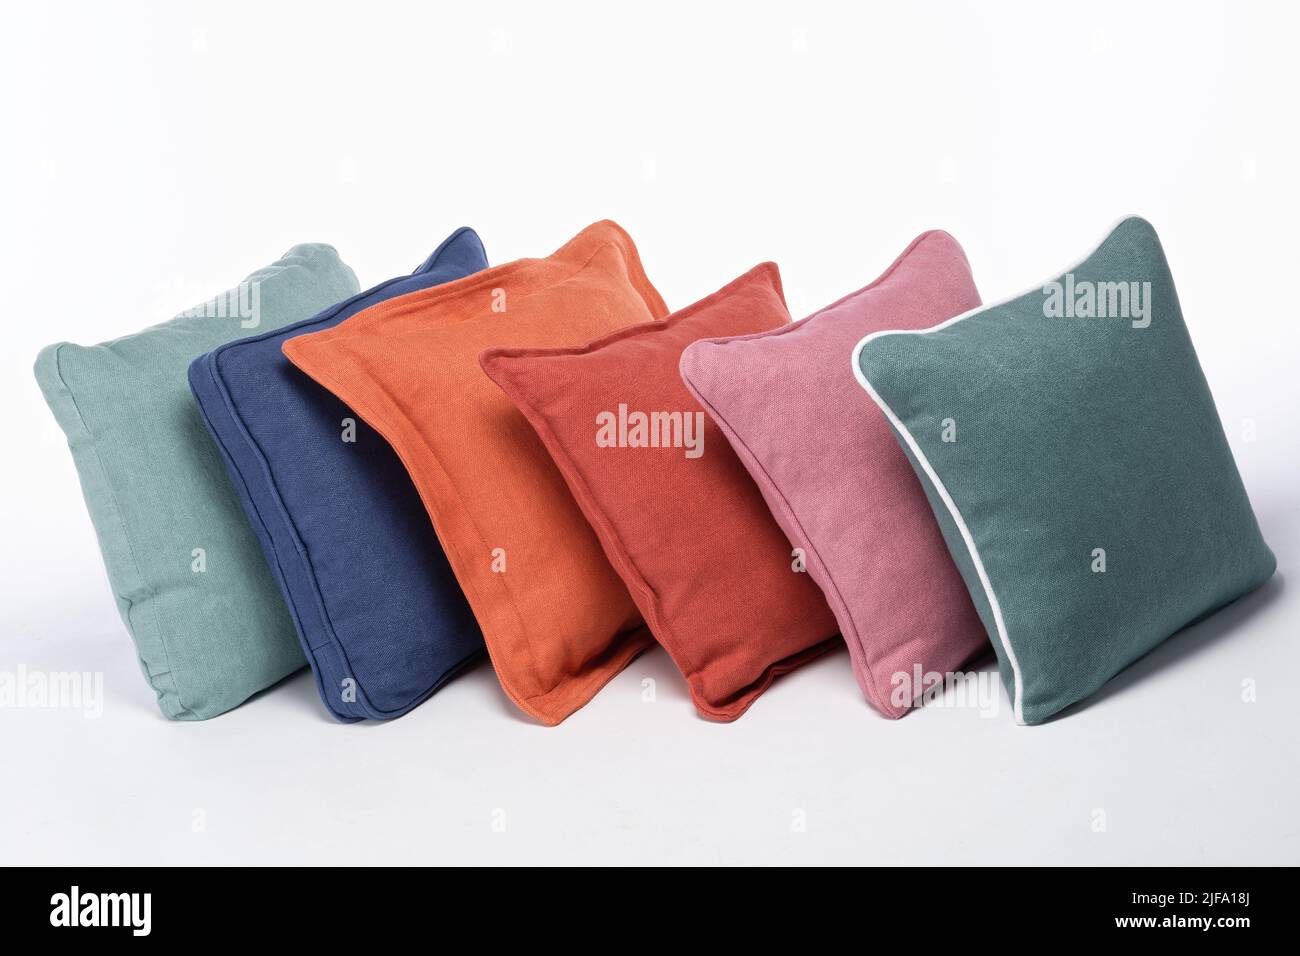 Sei diversi cuscini che si appoggiano l'uno contro l'altro su sfondo bianco. Un arcobaleno di colori e stili di cuscini per divani. Foto Stock